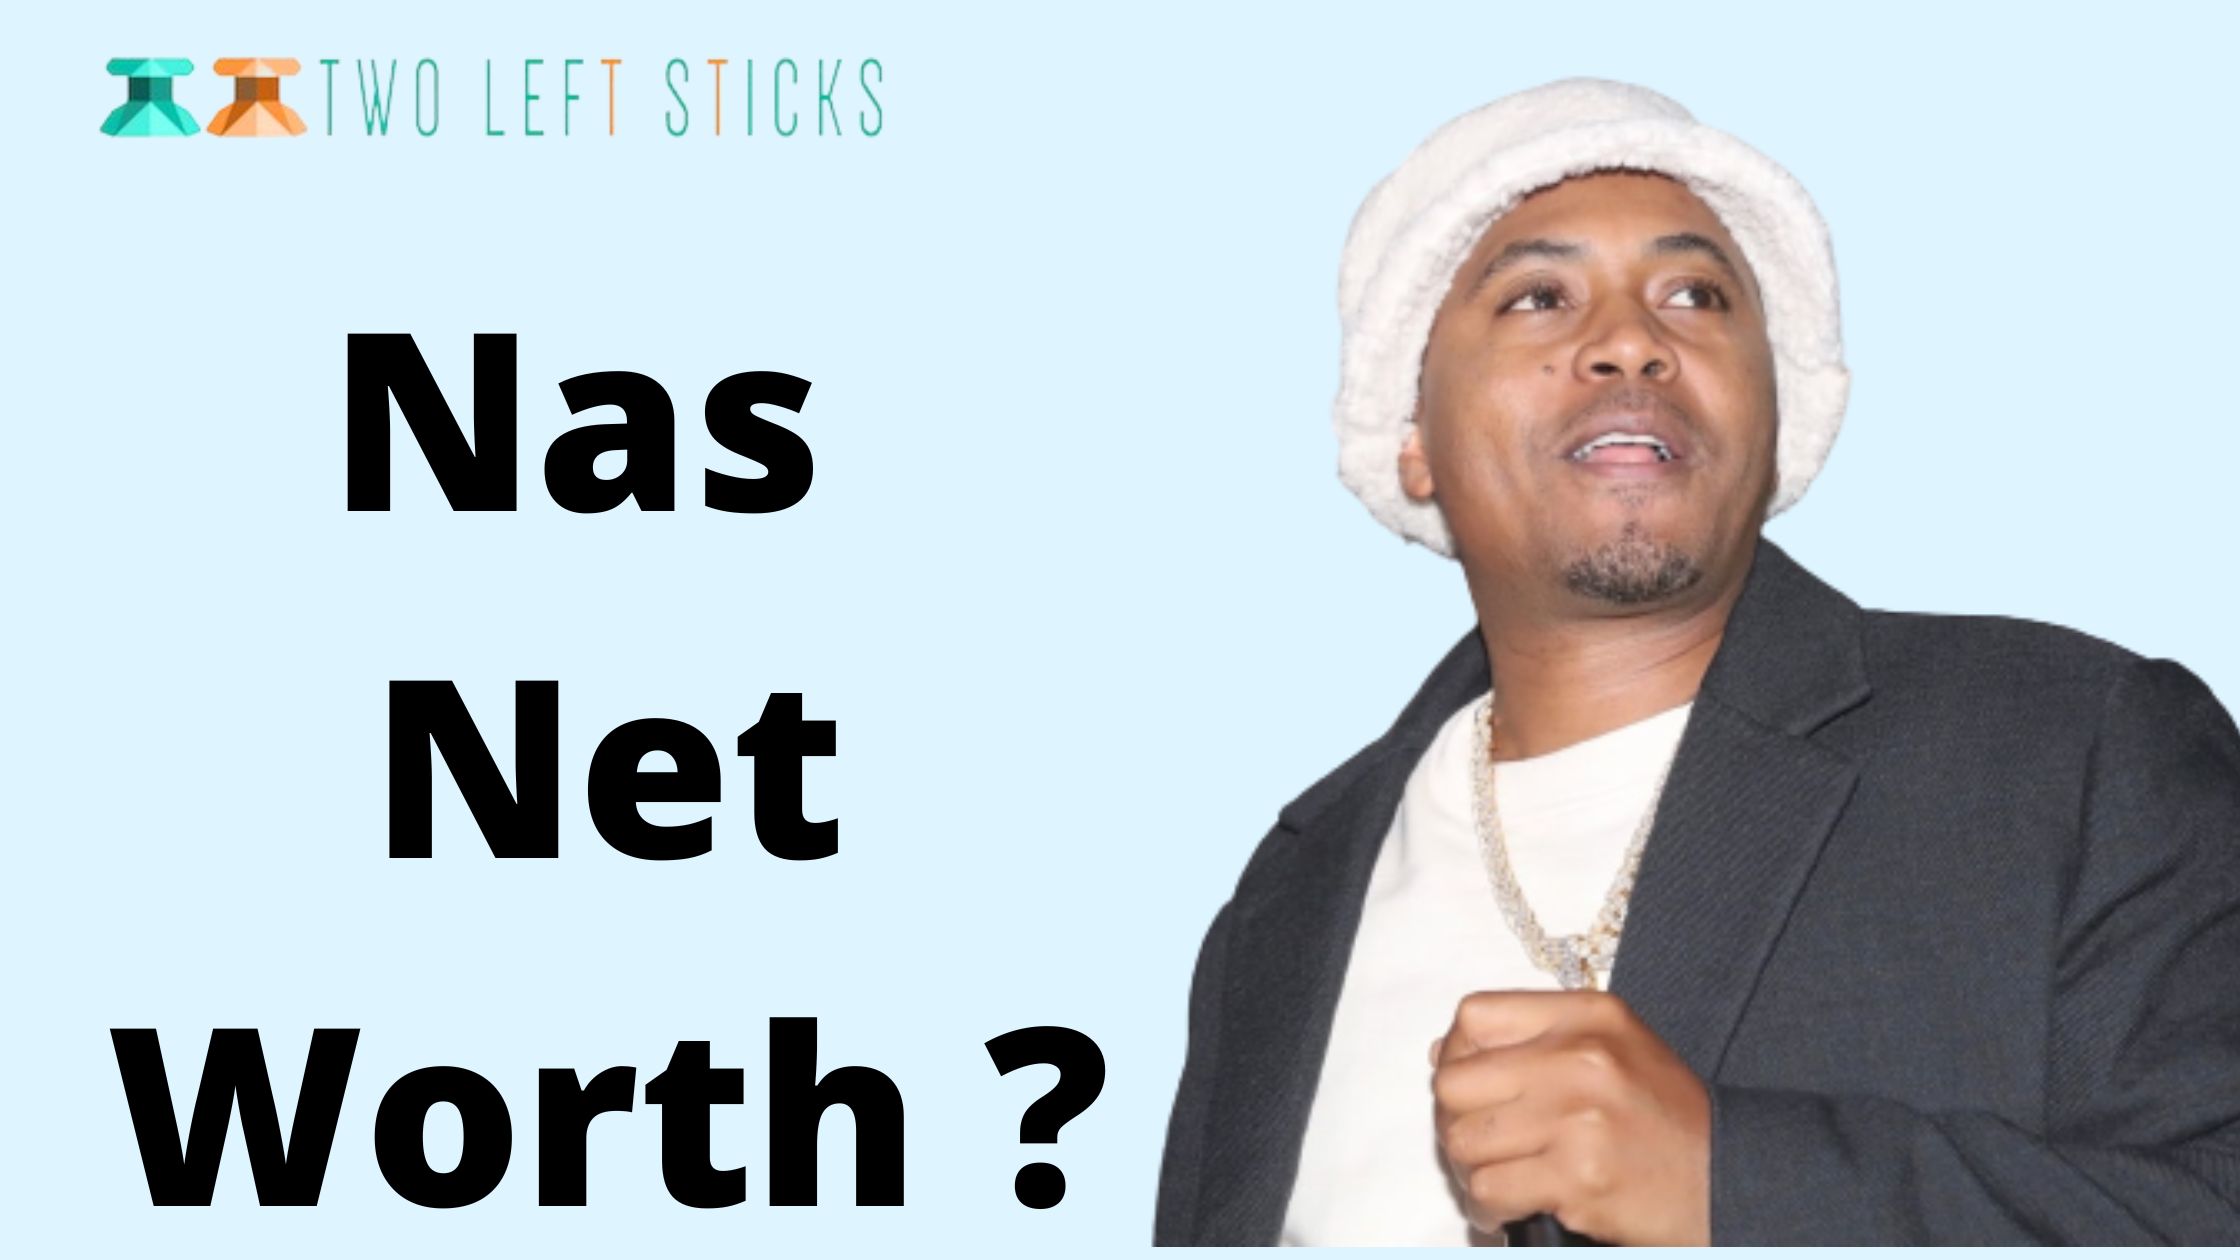 Nas-Net-Worth-twoleftsticks(1)